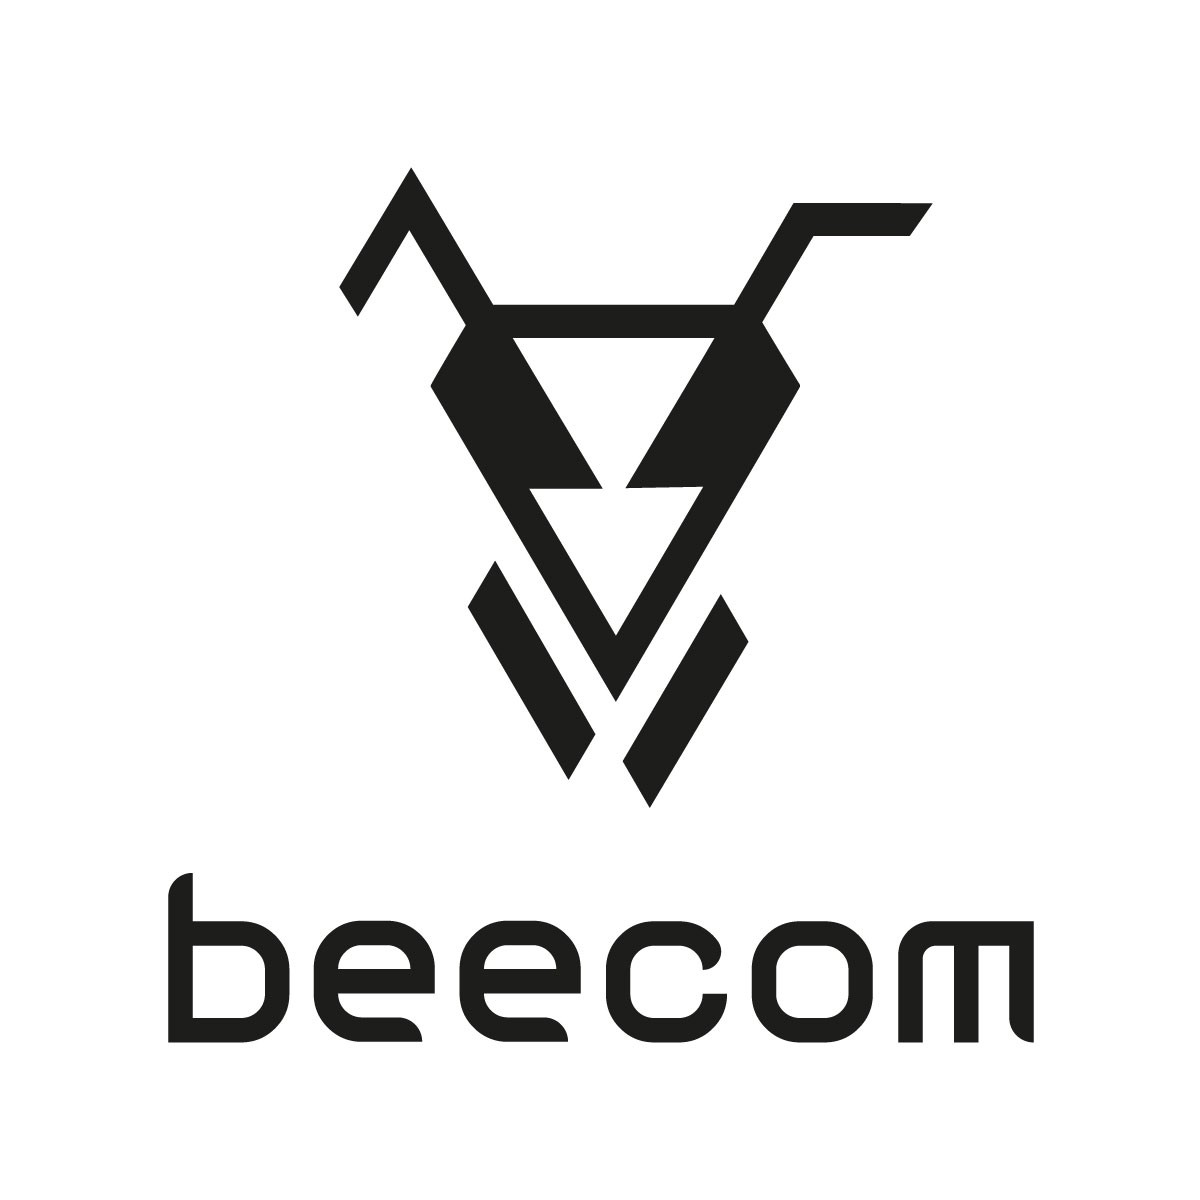 Beecom logo